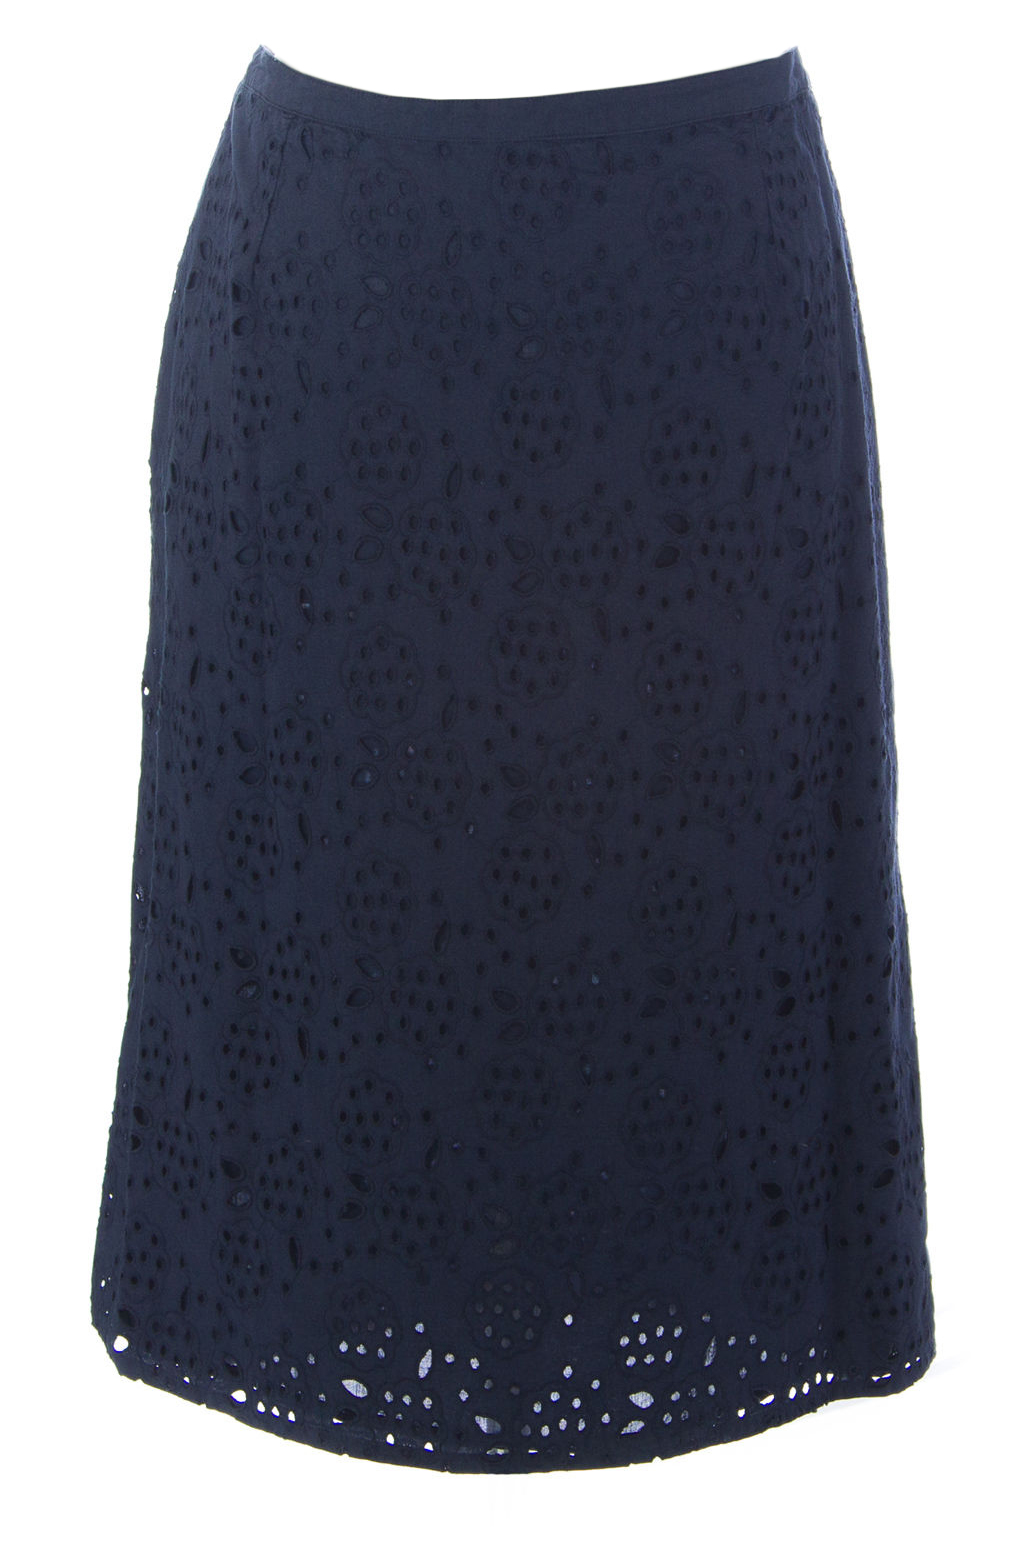 BODEN Women's Broderie Pencil Skirt WG401 $80 NWT | eBay